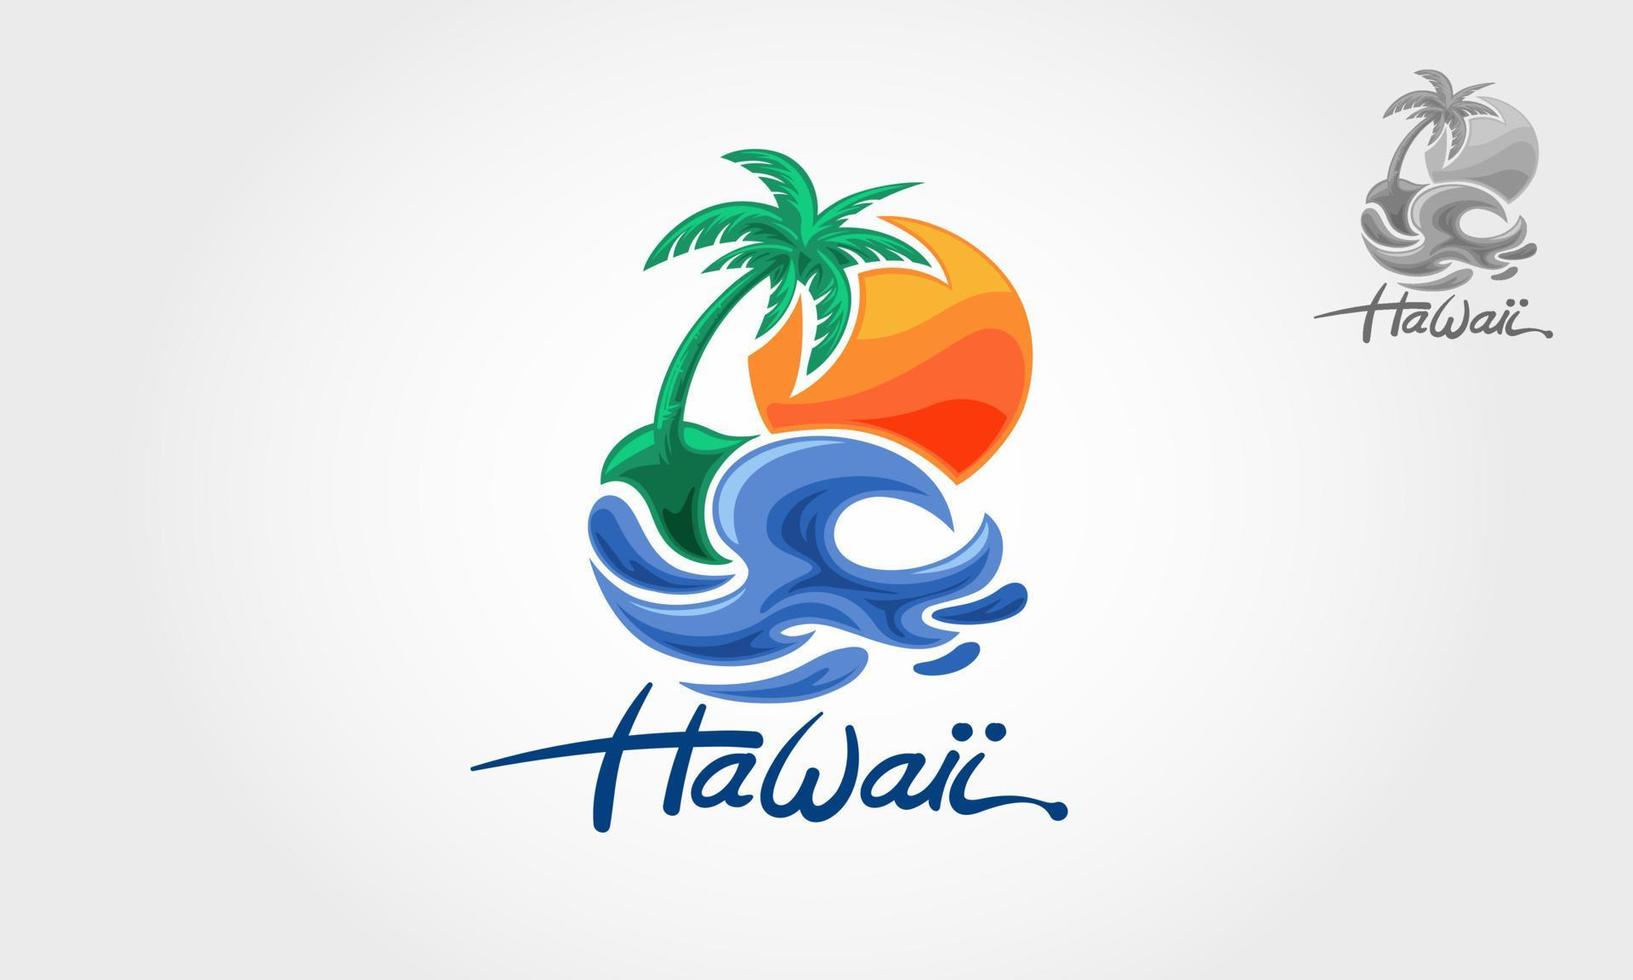 Hawaï vector logo illustratie. water oceaangolven met zon, palmboom en strand, voor restaurant en hotel.